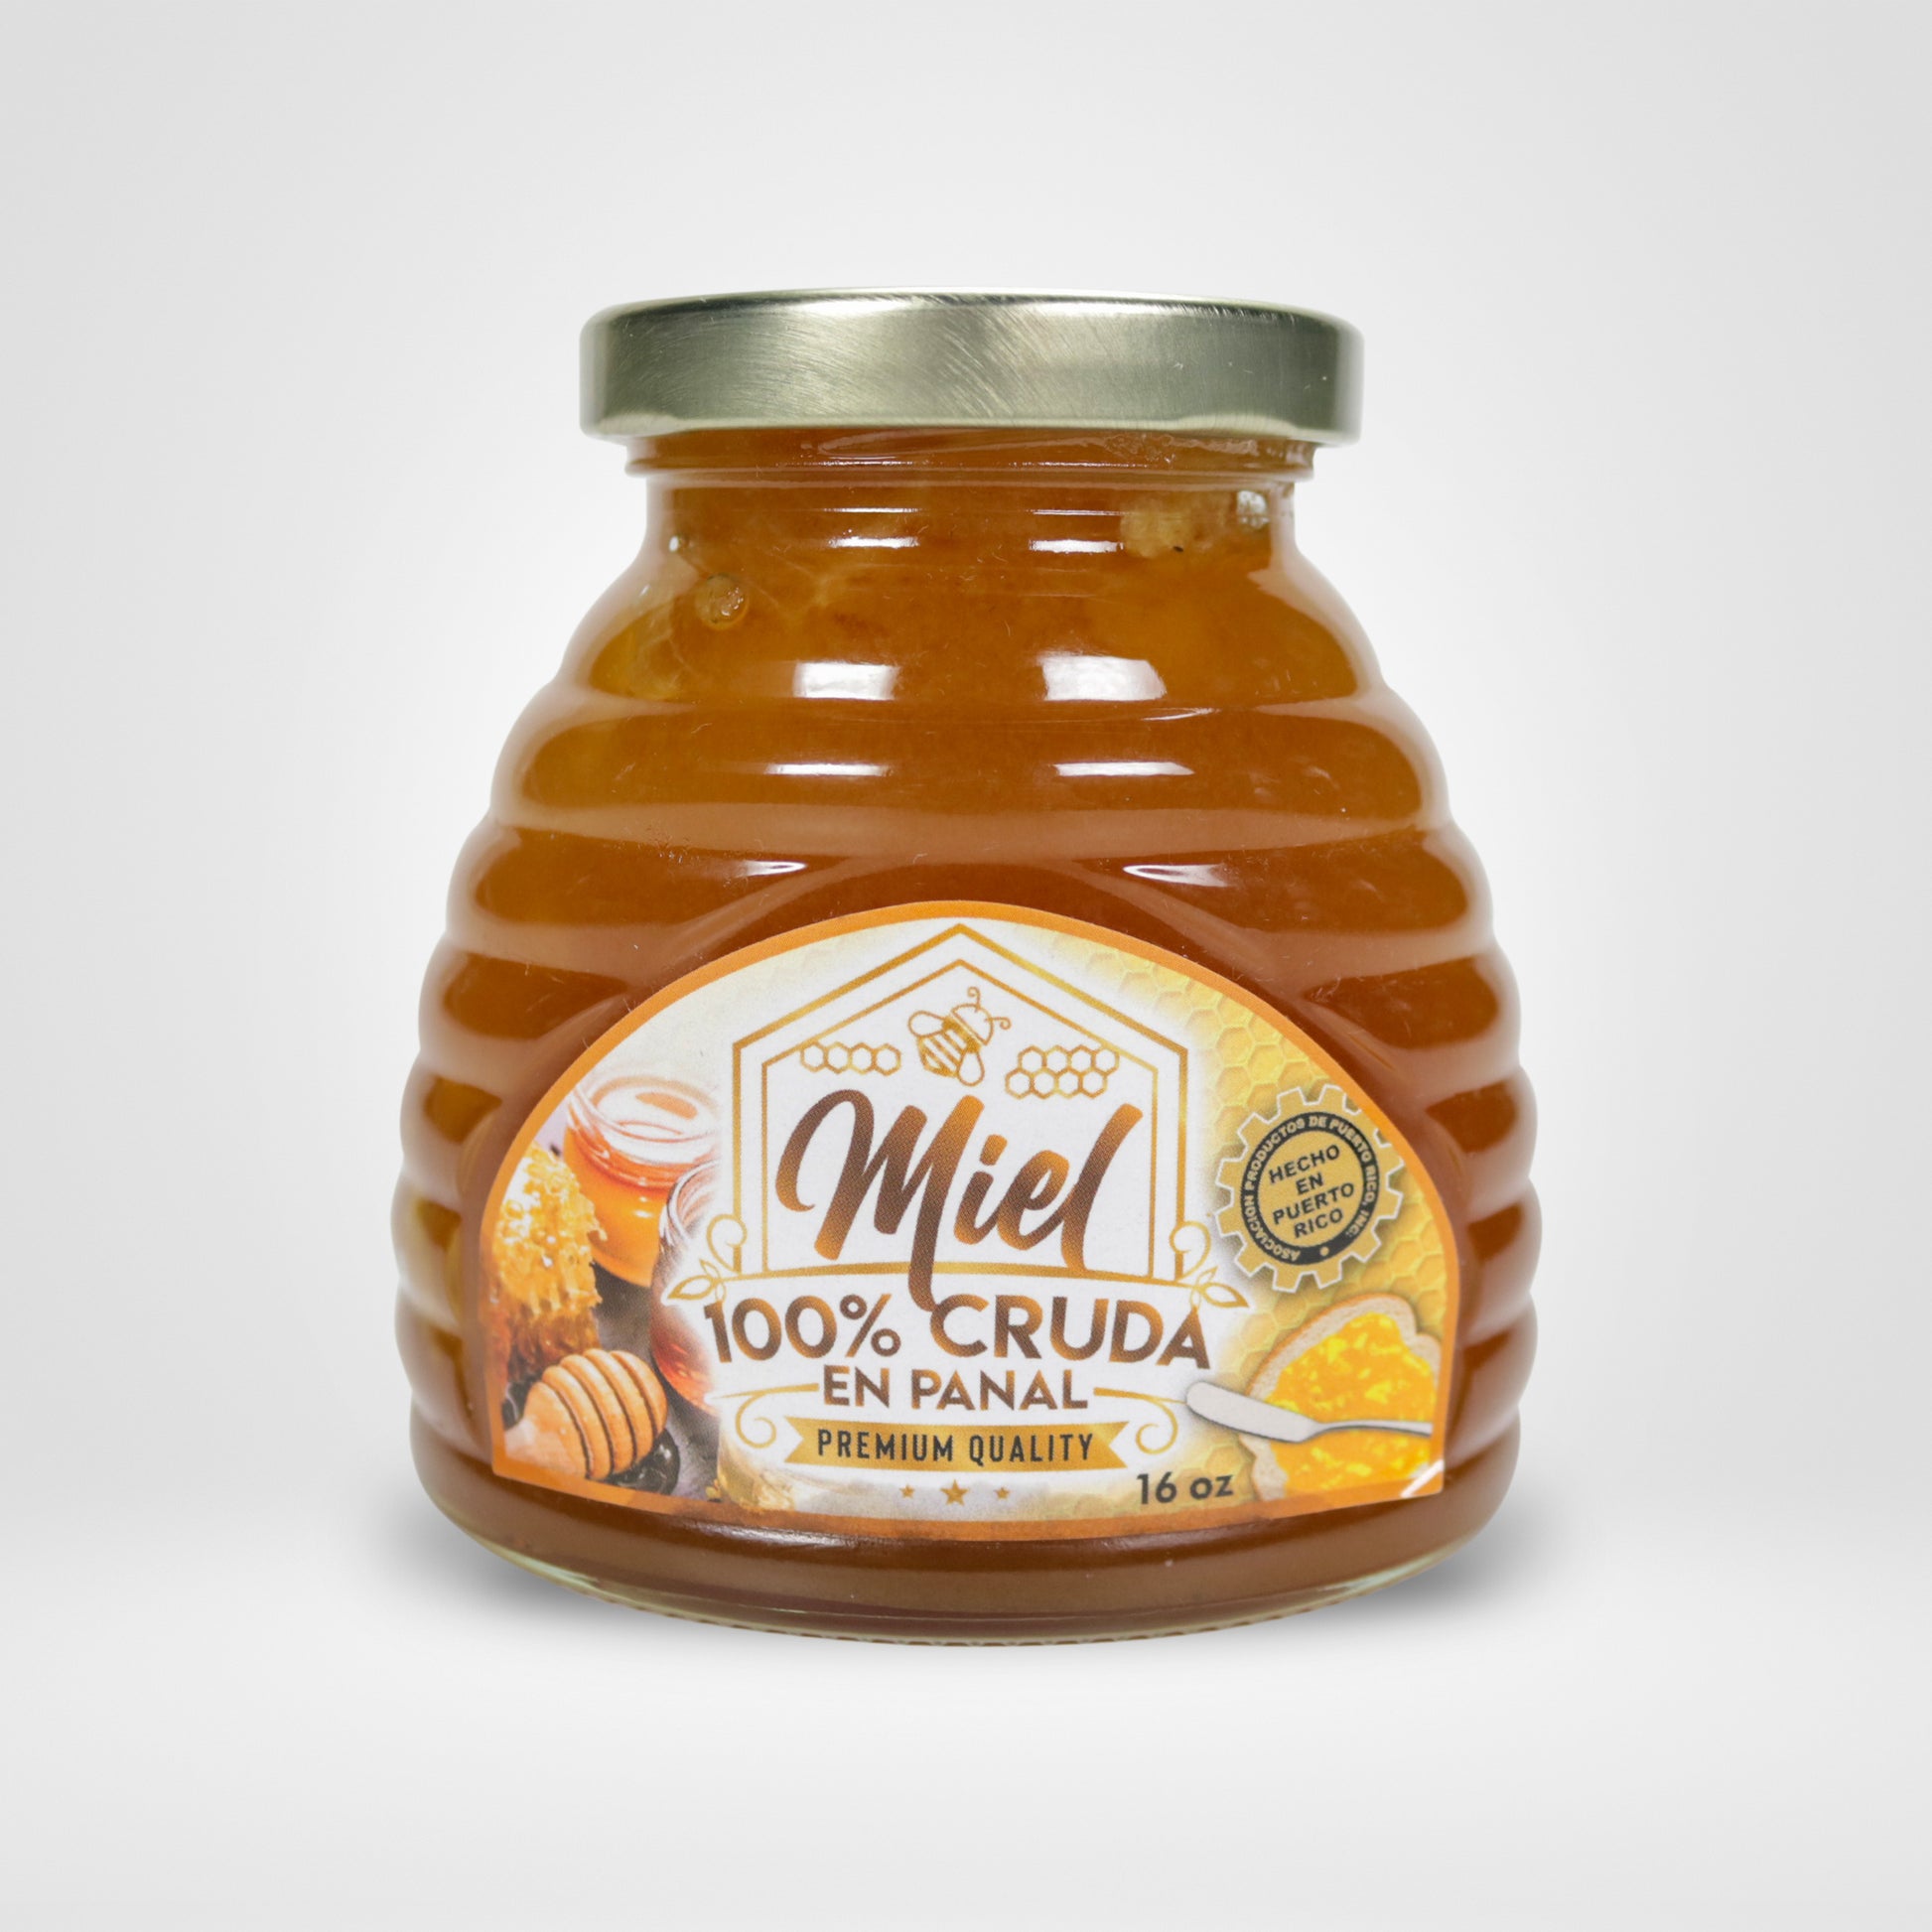 Panal de miel de Bellota  Compra Online en Miel Sierraflor